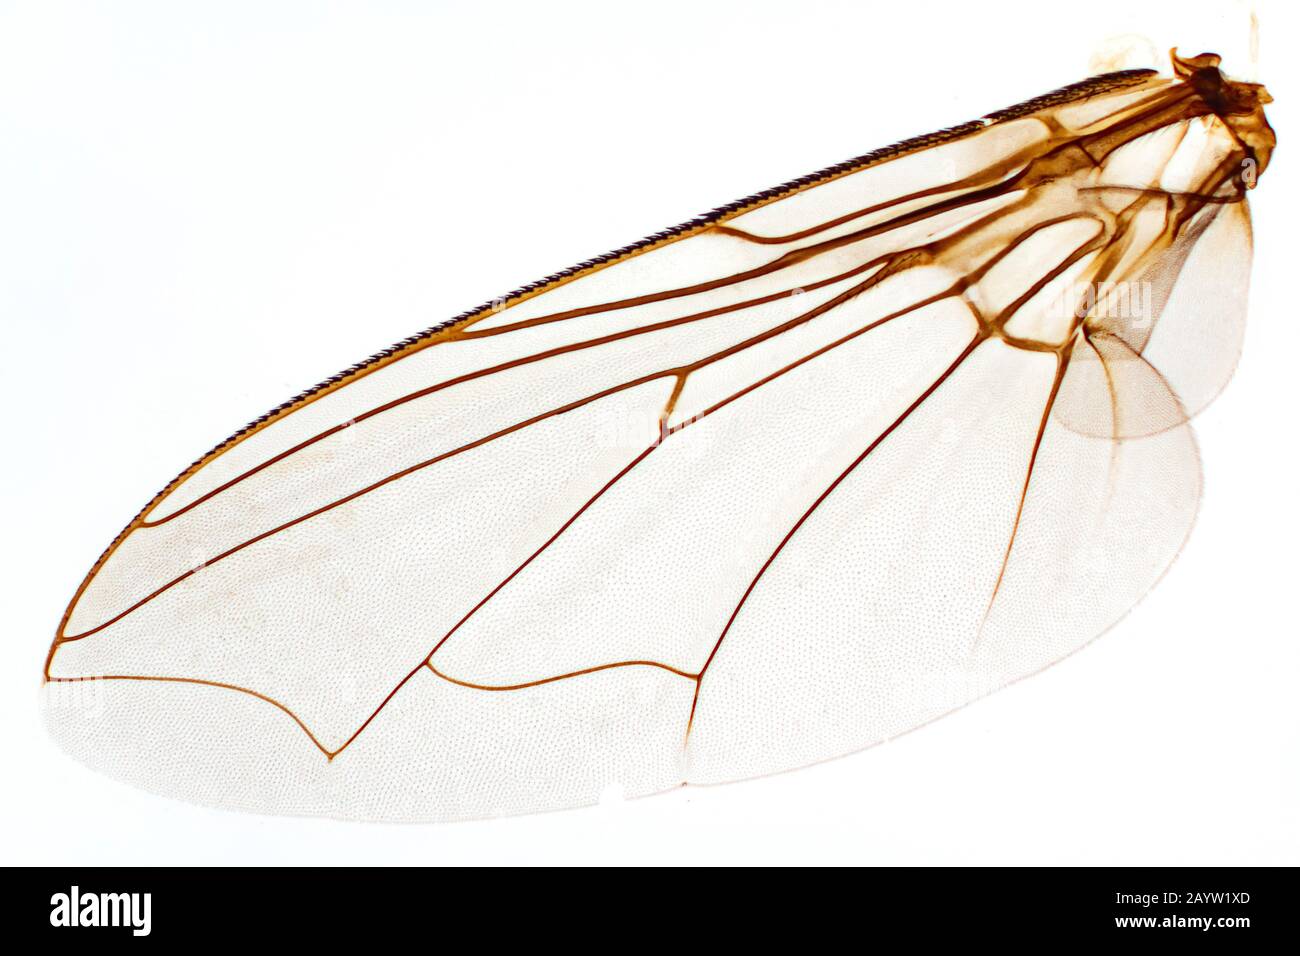 Mouche de maison (Musca domestica), aile d'une mouche de maison, photo de microscope, Allemagne Banque D'Images